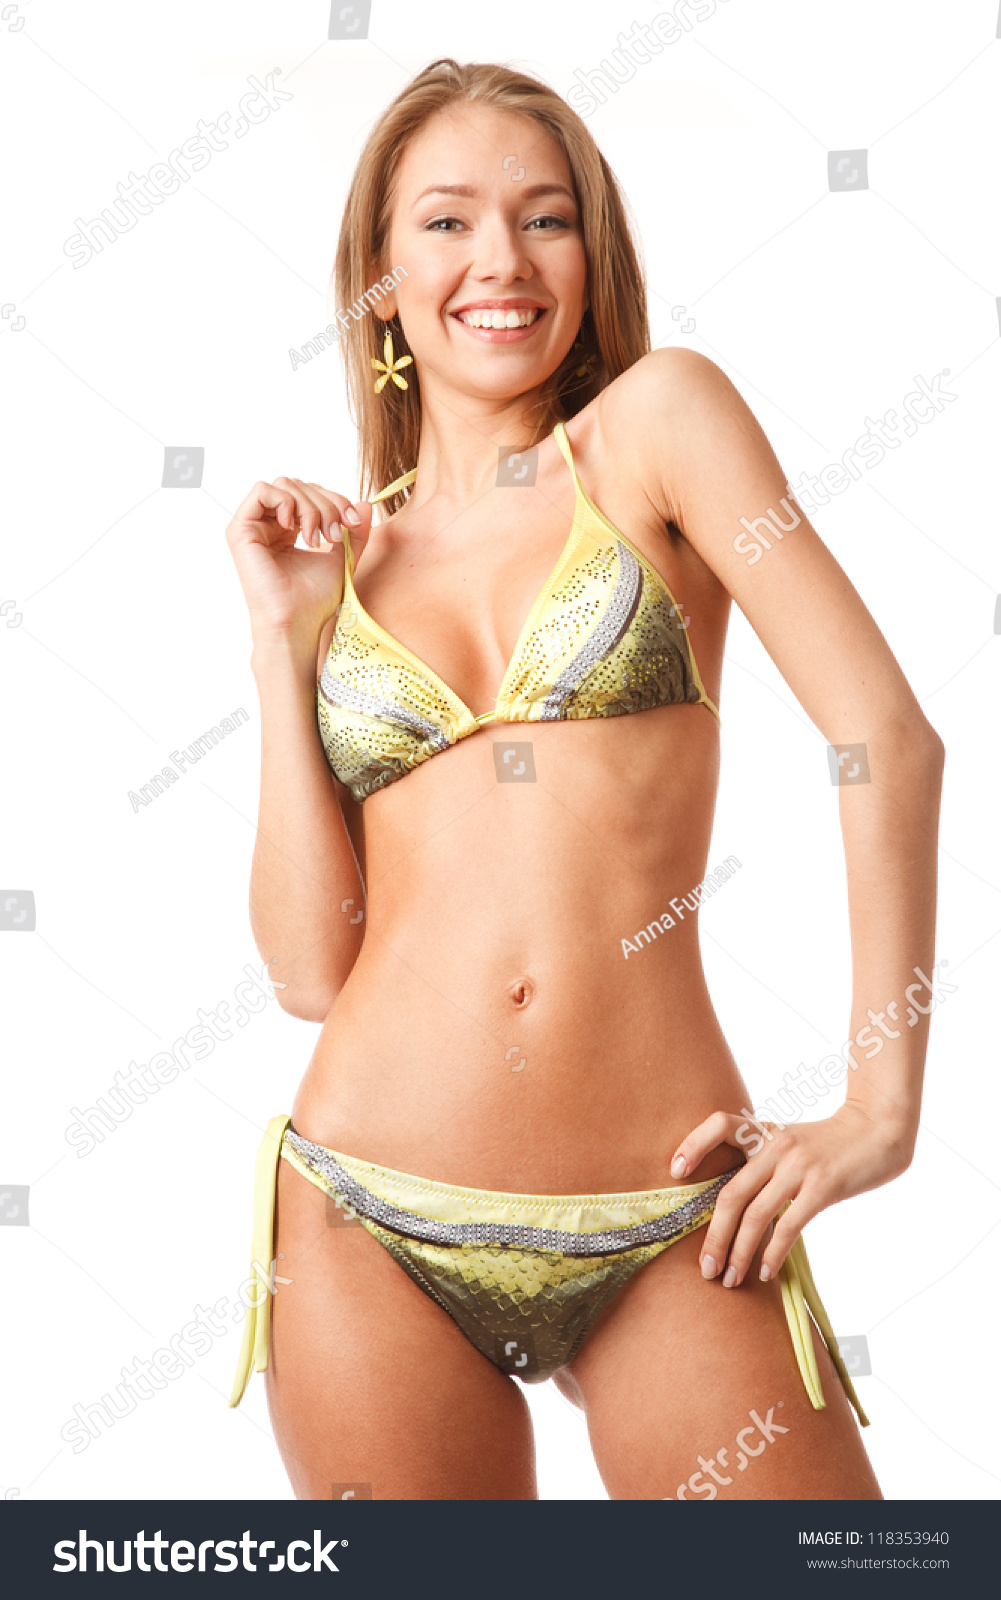 chris weal add perfect teen bikini body photo